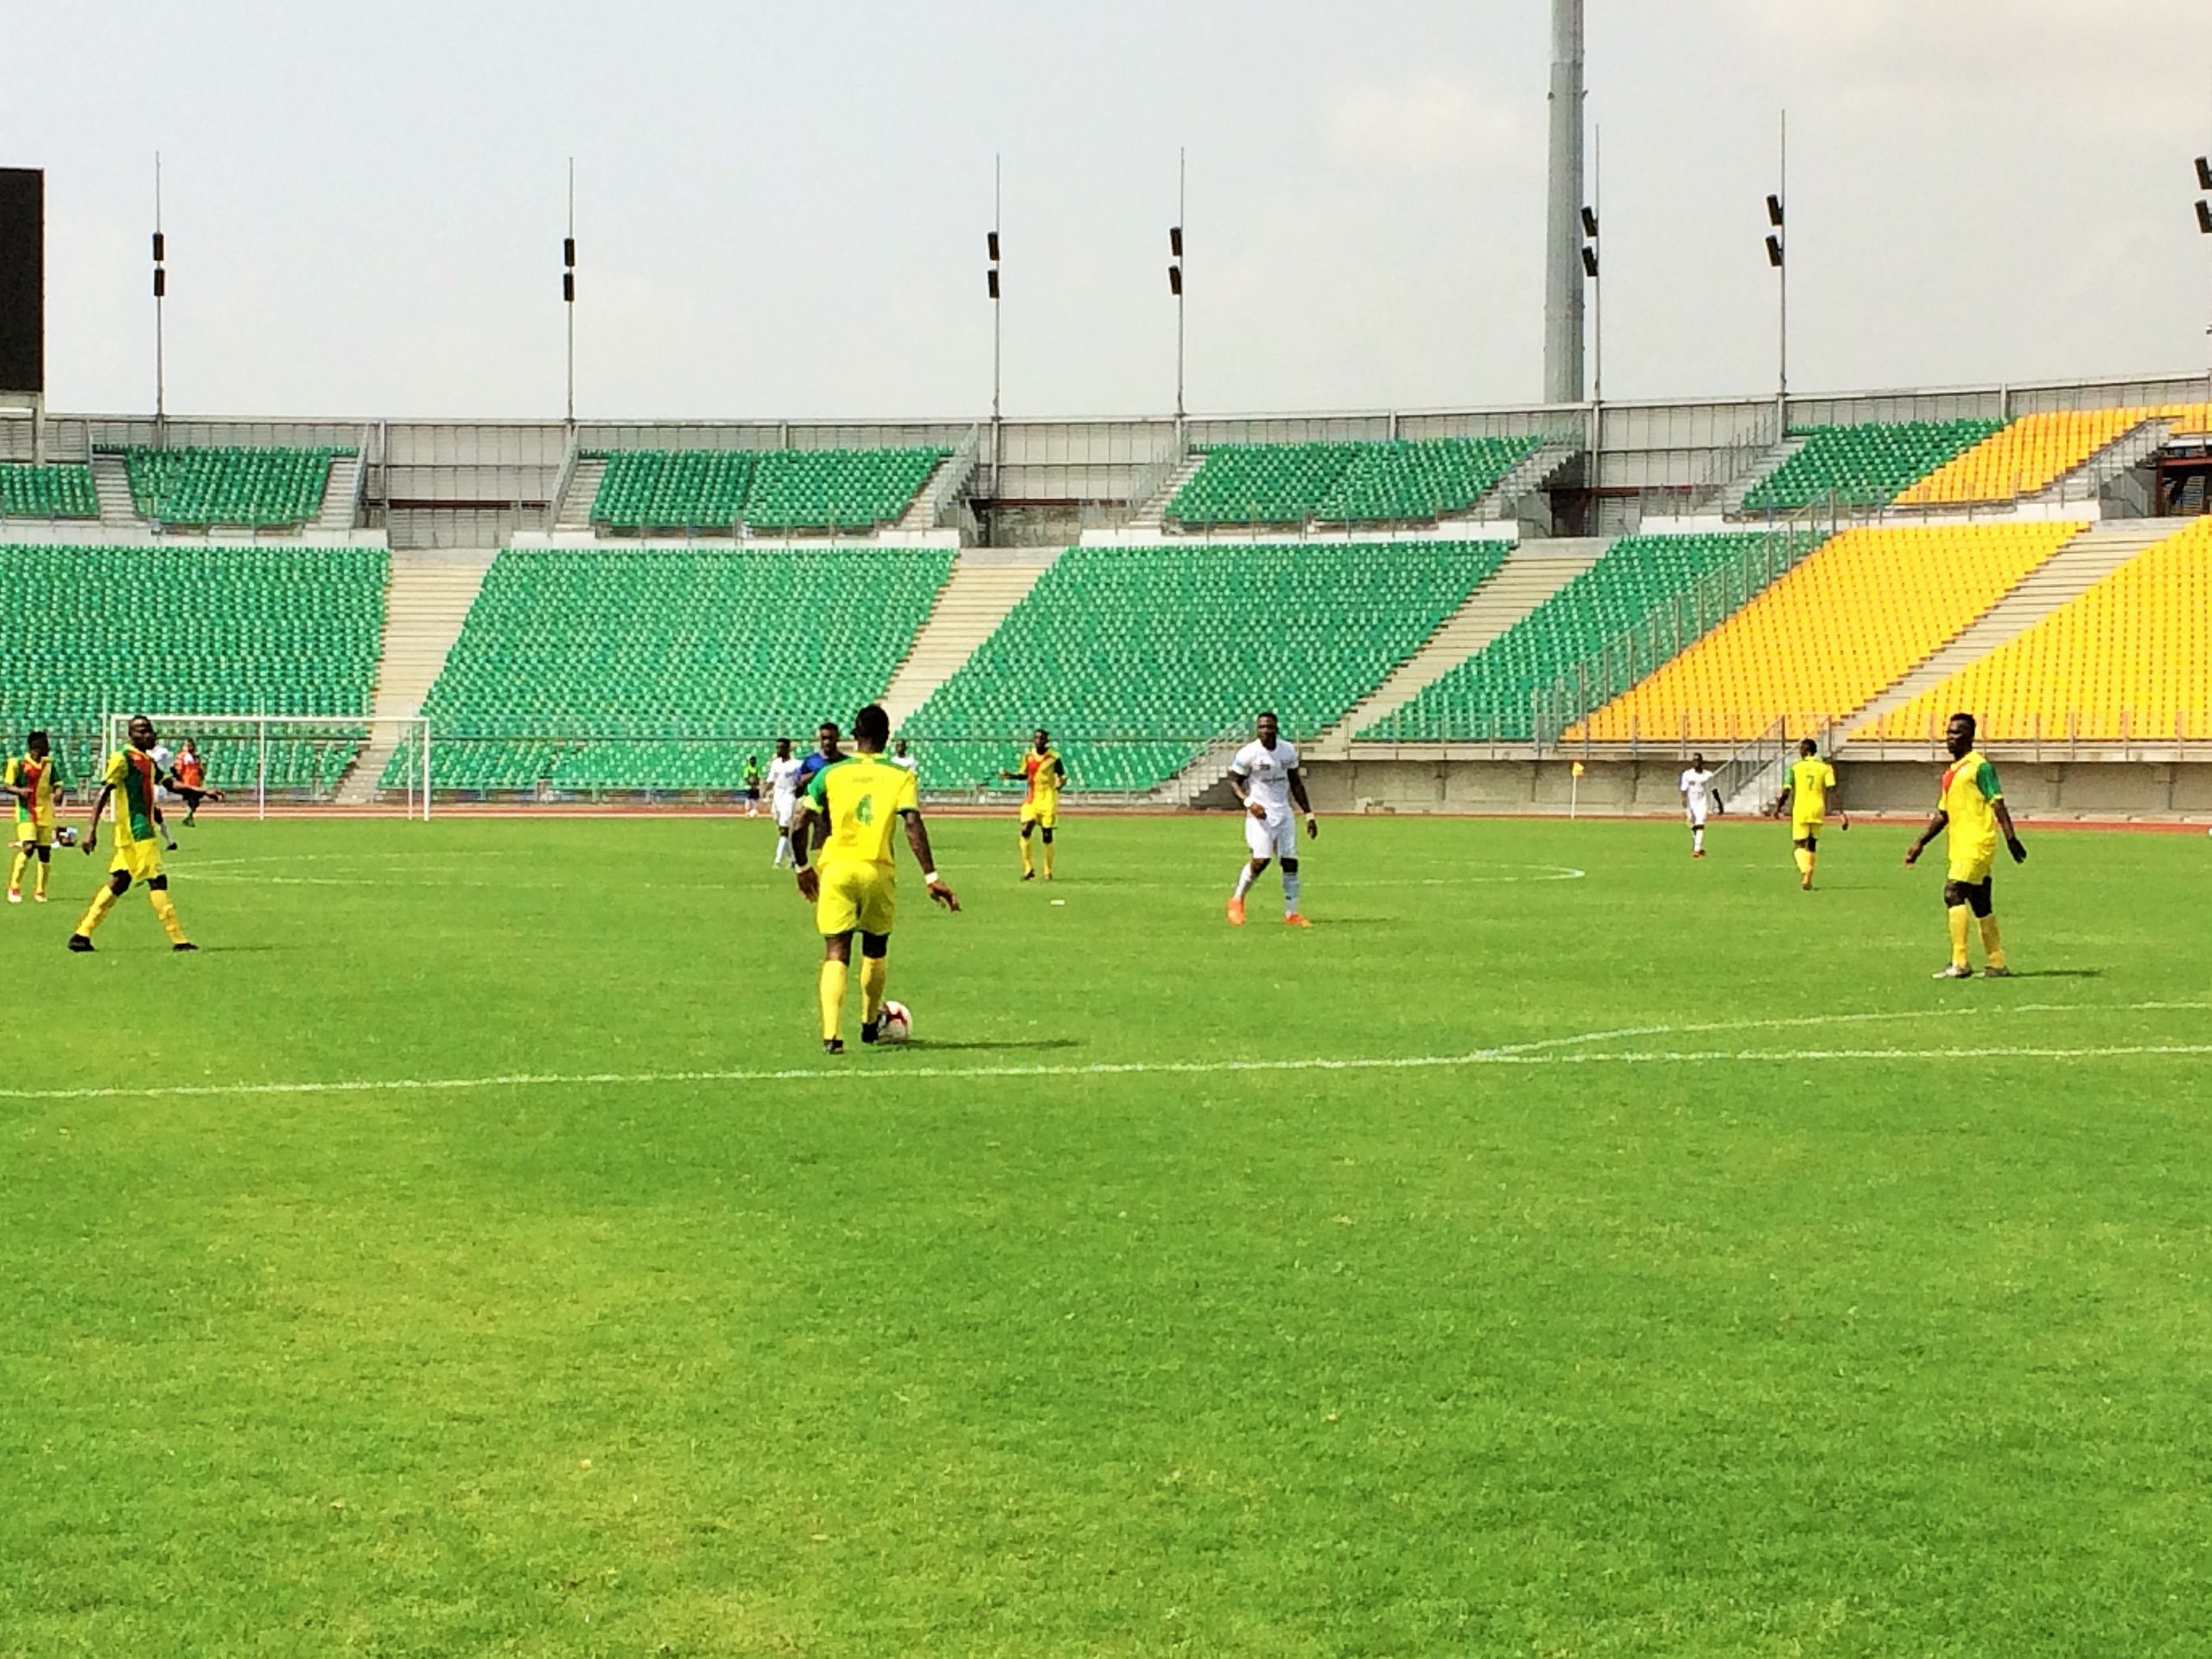 Stade de la Réunification, samedi 03 avril 2021. Une phase de jeu entre Union sportive de Douala et Yafoot II. Photo: Moustapha Oumarou